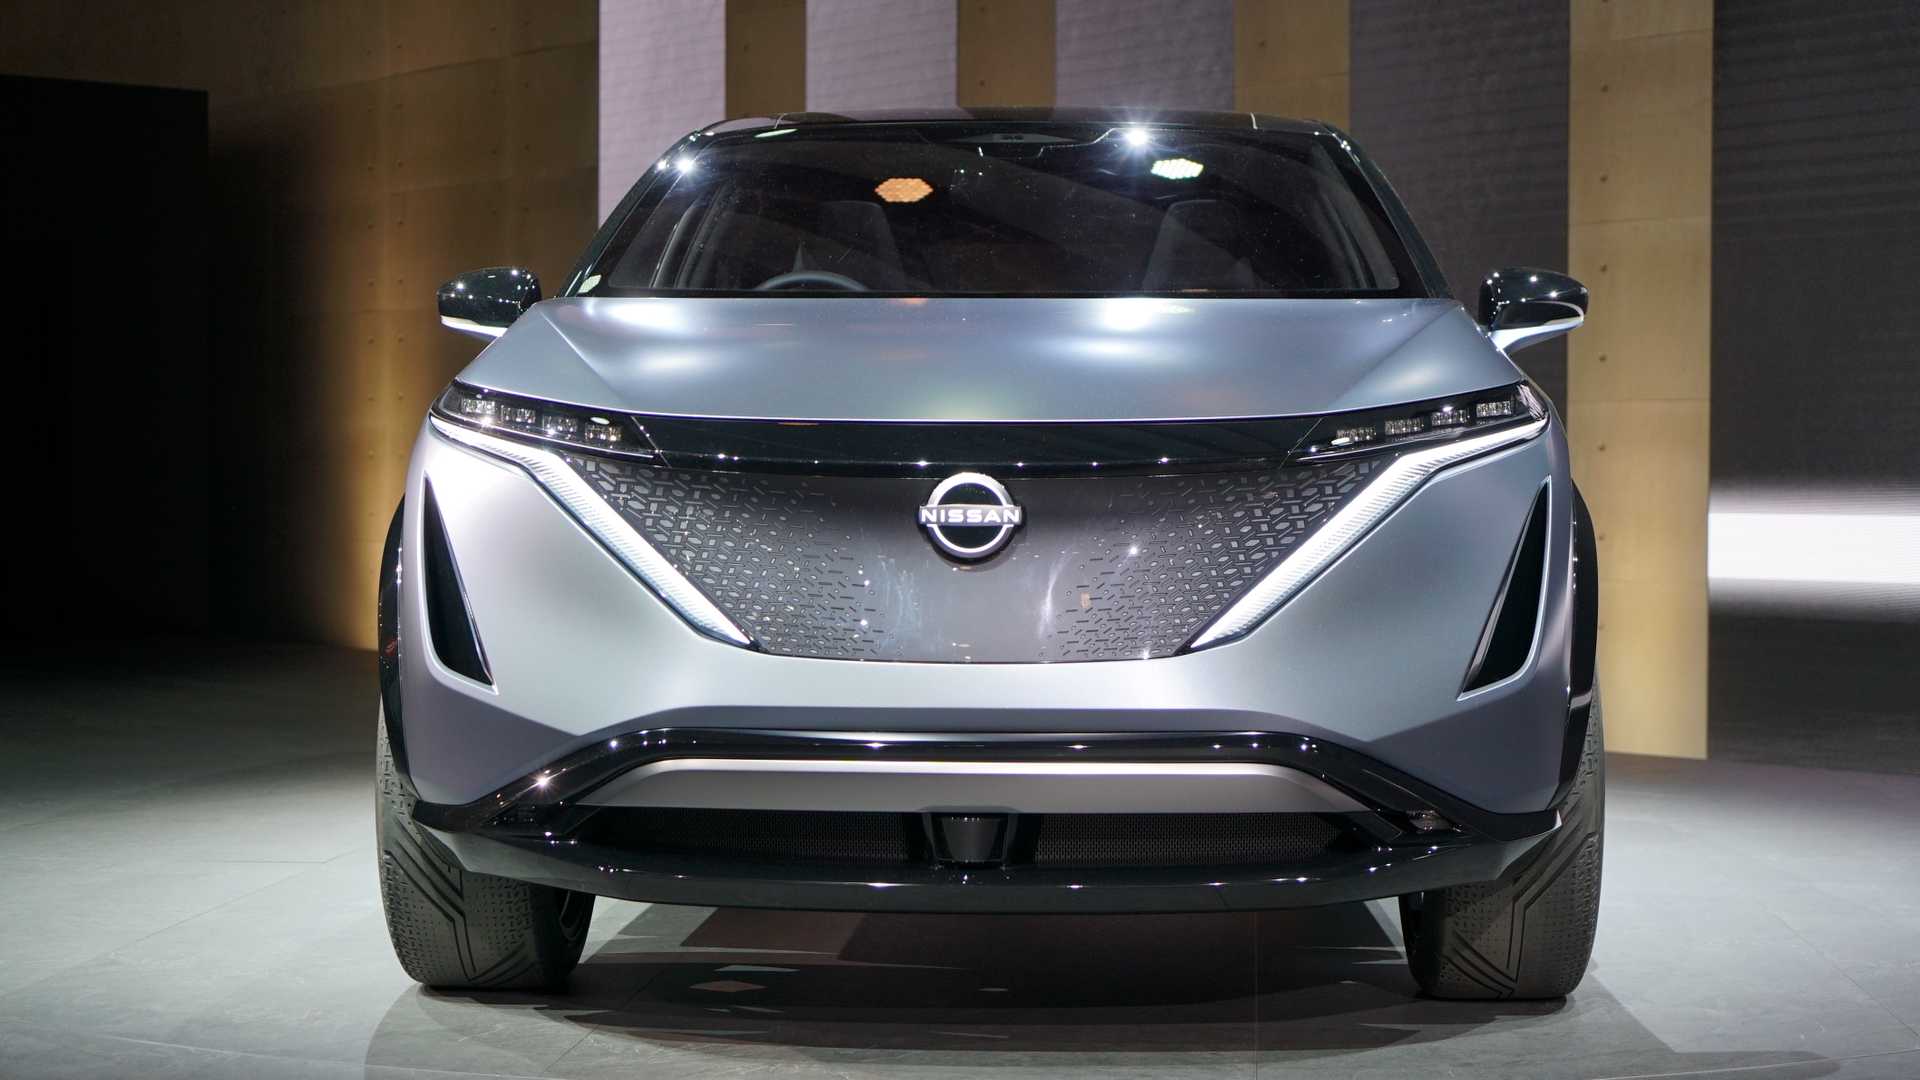 ล็อกปฏิทิน 15 ก.ค.! Nissan Ariya 2021 ครอสโอเวอร์พลังงานไฟฟ้าเตรียมเปิดตัวที่ญี่ปุ่น